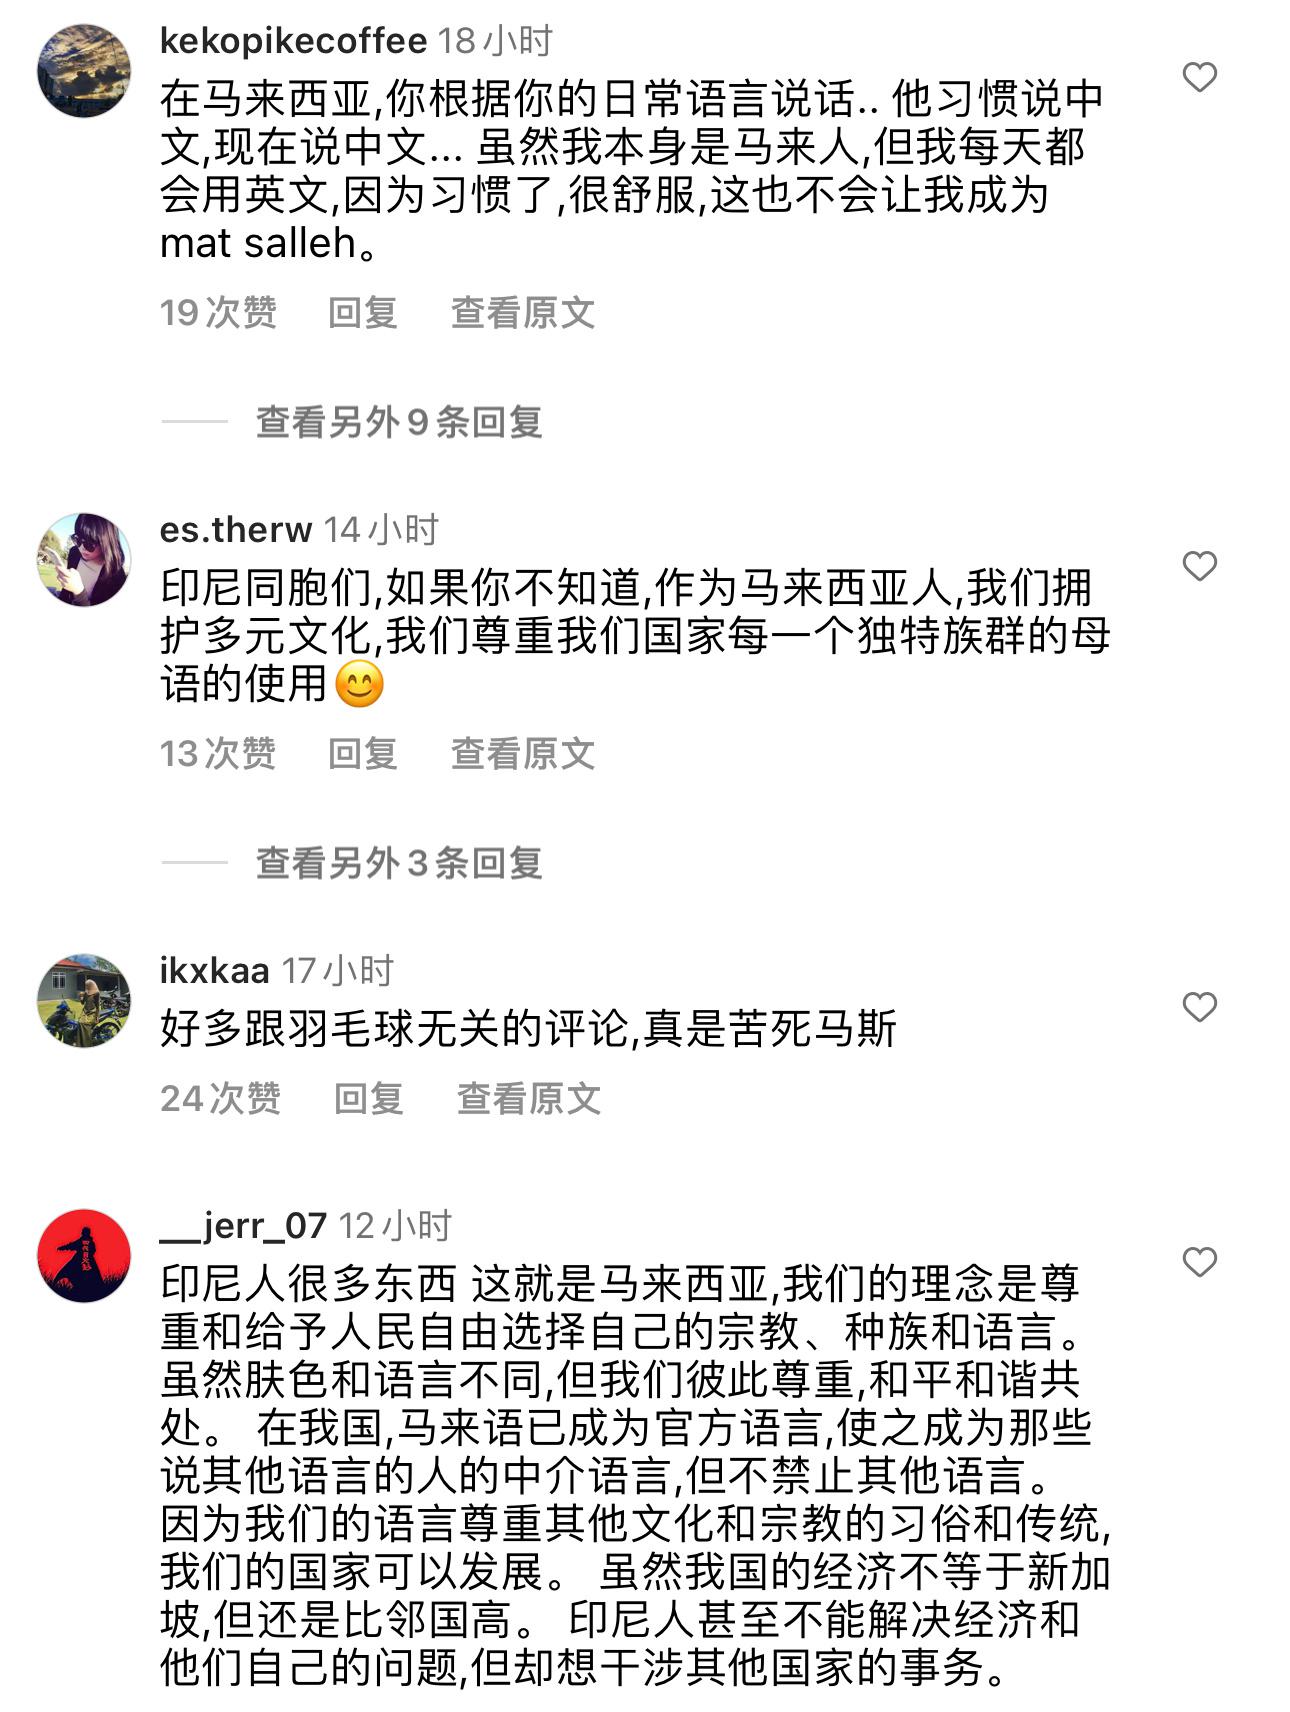 昨天bwf发了一个李梓嘉的视频，就因为李梓嘉讲的是中文，导致印尼球迷和大马球迷在(4)